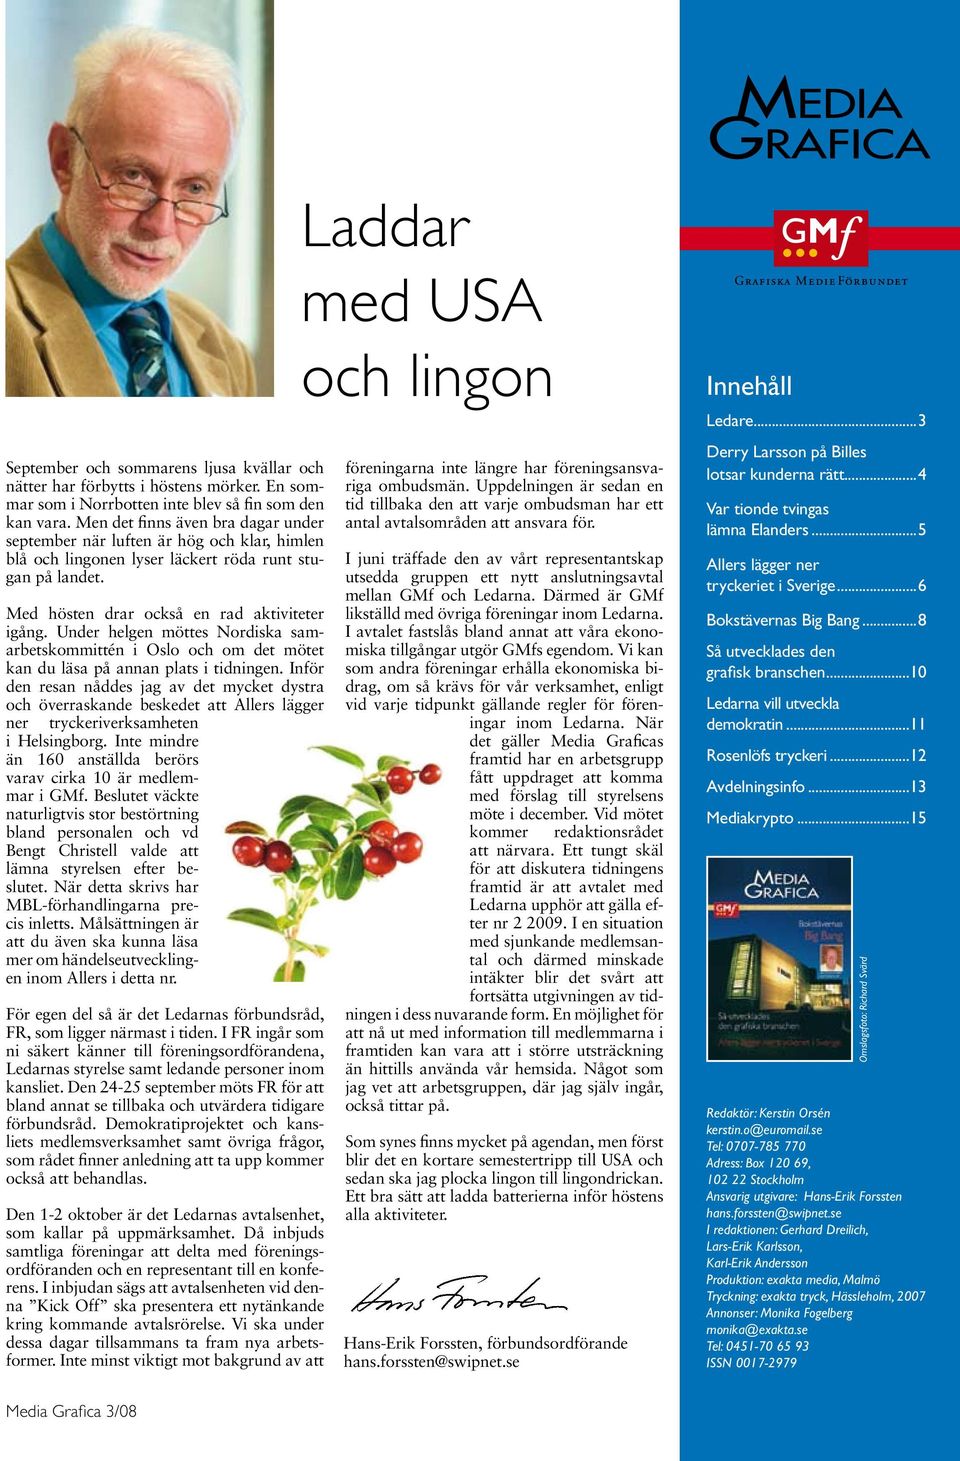 Under helgen möttes Nordiska samarbetskommittén i Oslo och om det mötet kan du läsa på annan plats i tidningen.